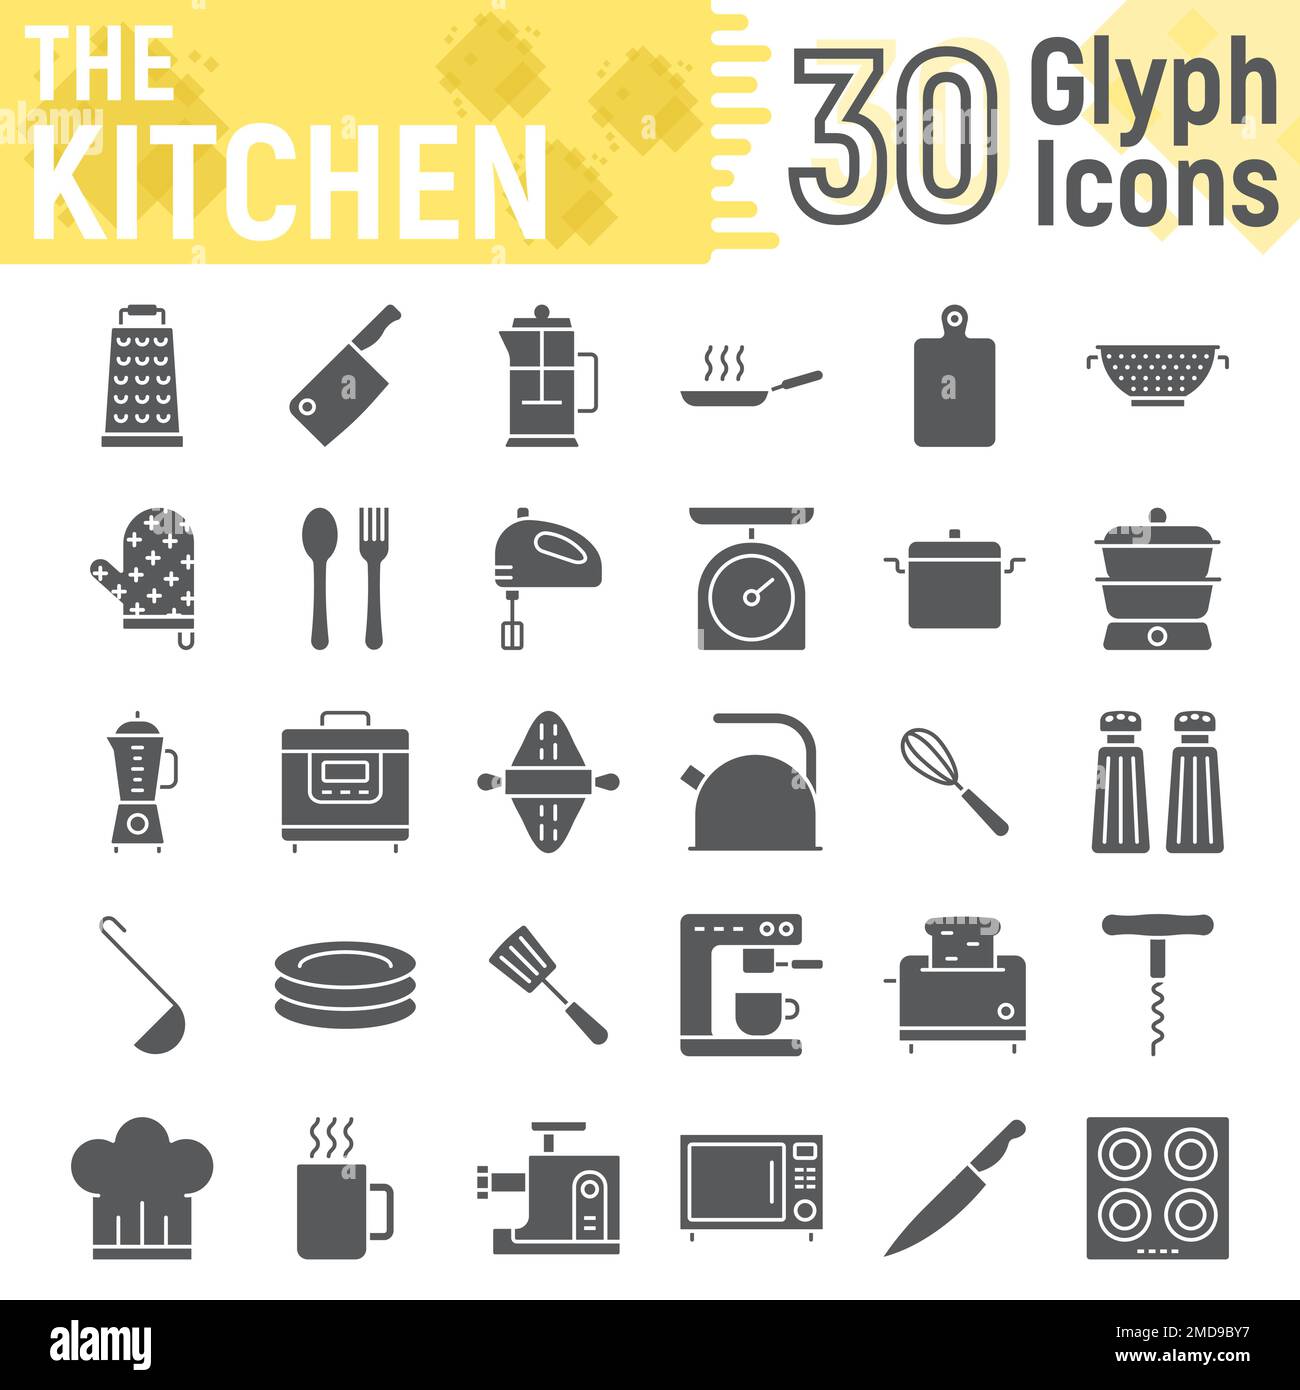 Set icone glyph cucina, collezione di simboli per la casa, schizzi vettoriali, illustrazioni logo, segni di cottura pacchetto pittogrammi solidi isolato su sfondo bianco, eps 10. Illustrazione Vettoriale